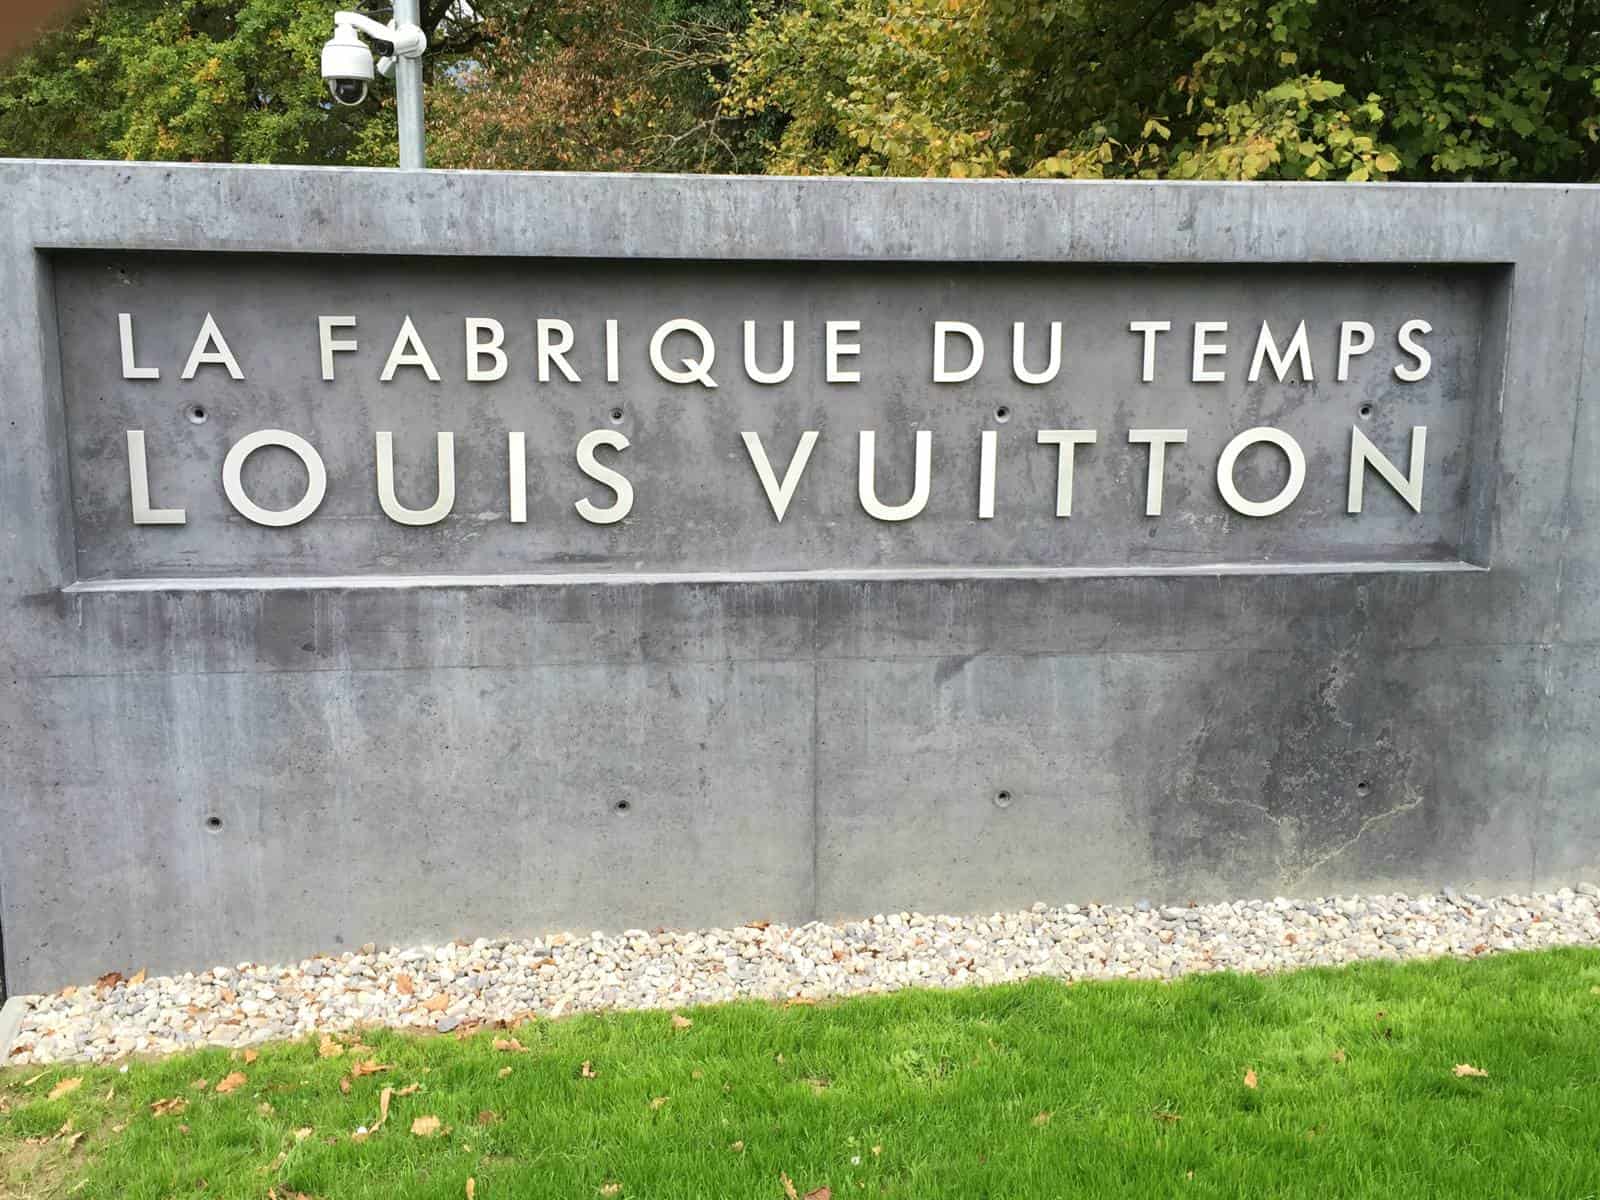 Louis Vuitton celebra 20 años de relojería